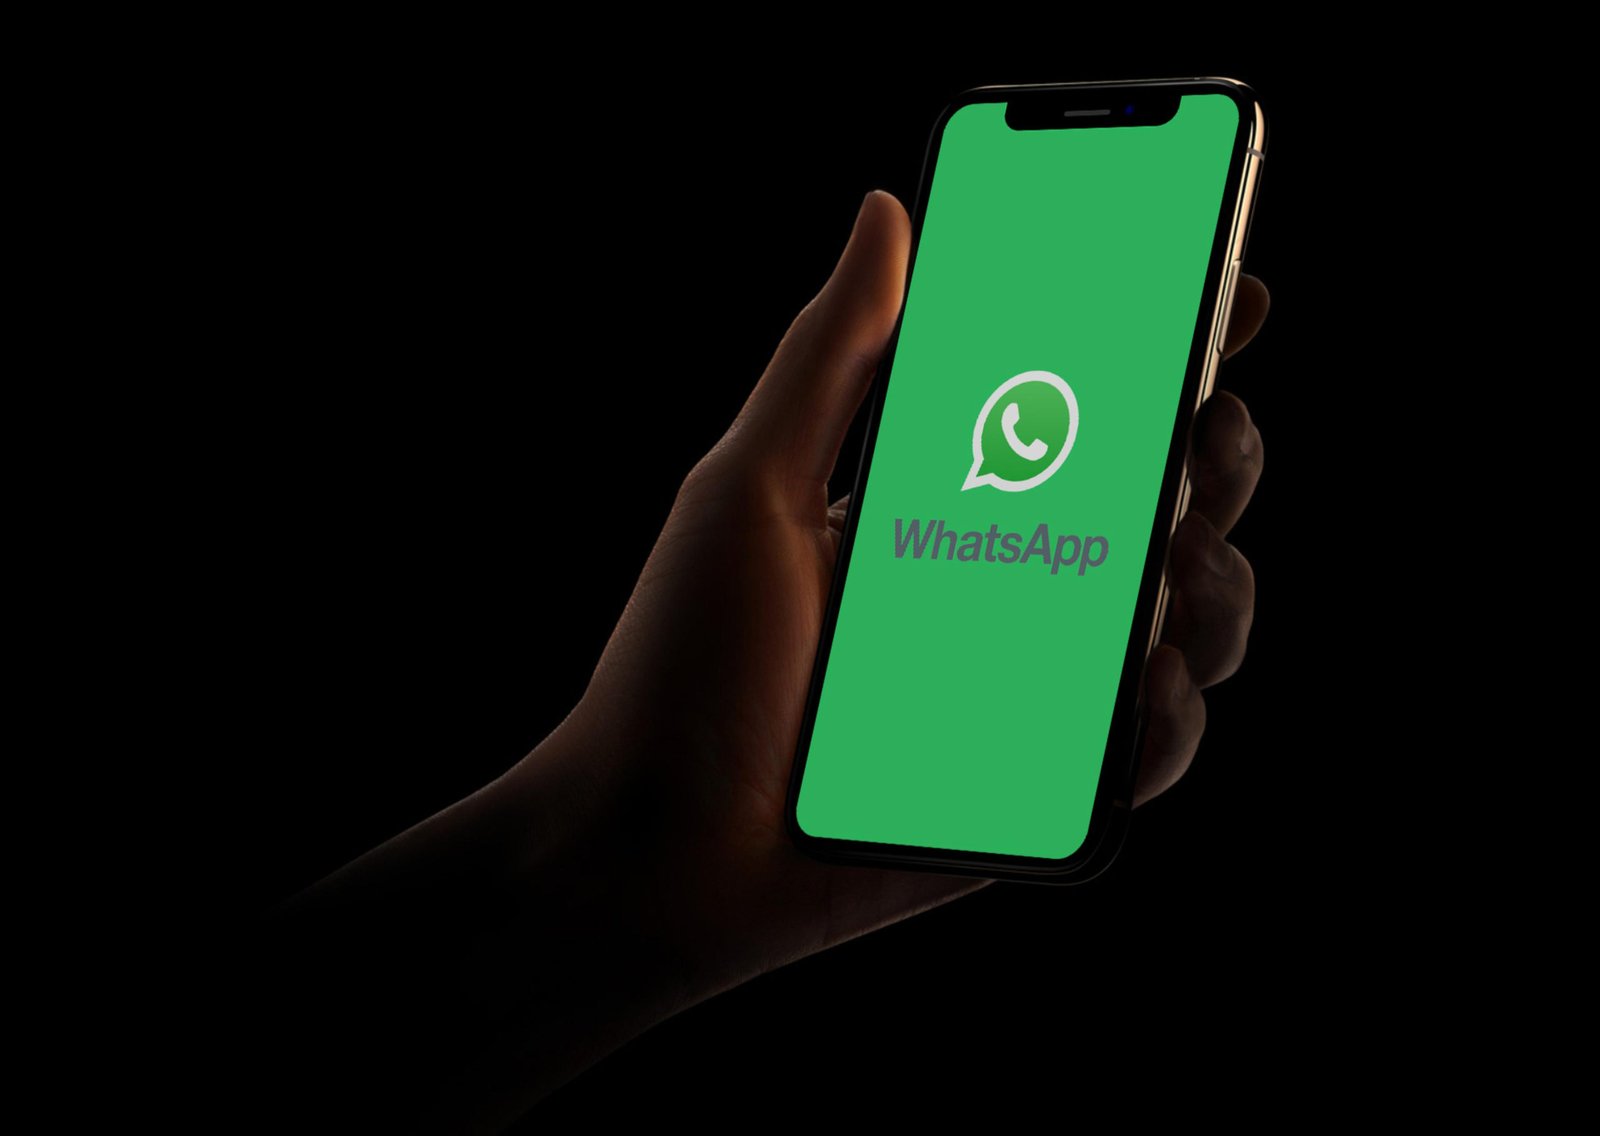 Não deixa rastro! Aprenda a ativar o modo SUPER invisível do WhatsApp